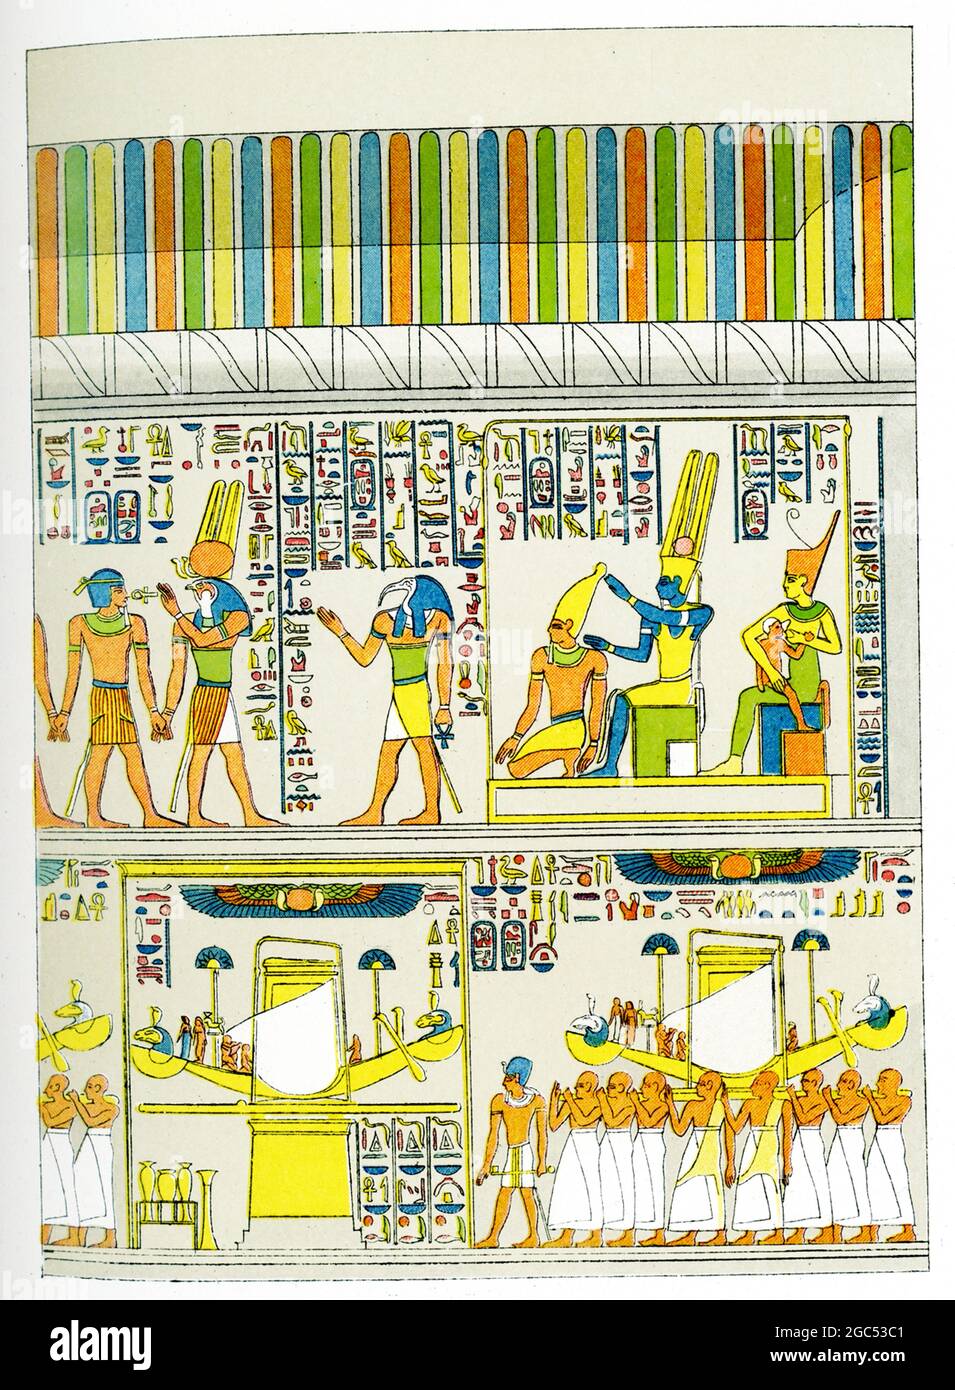 La didascalia che accompagna questa illustrazione del 1903 nel libro di Gaston Maspero sulla storia dell'Egitto recita: "Bassorilievi sulle pareti di granito a Karnak". Foto Stock